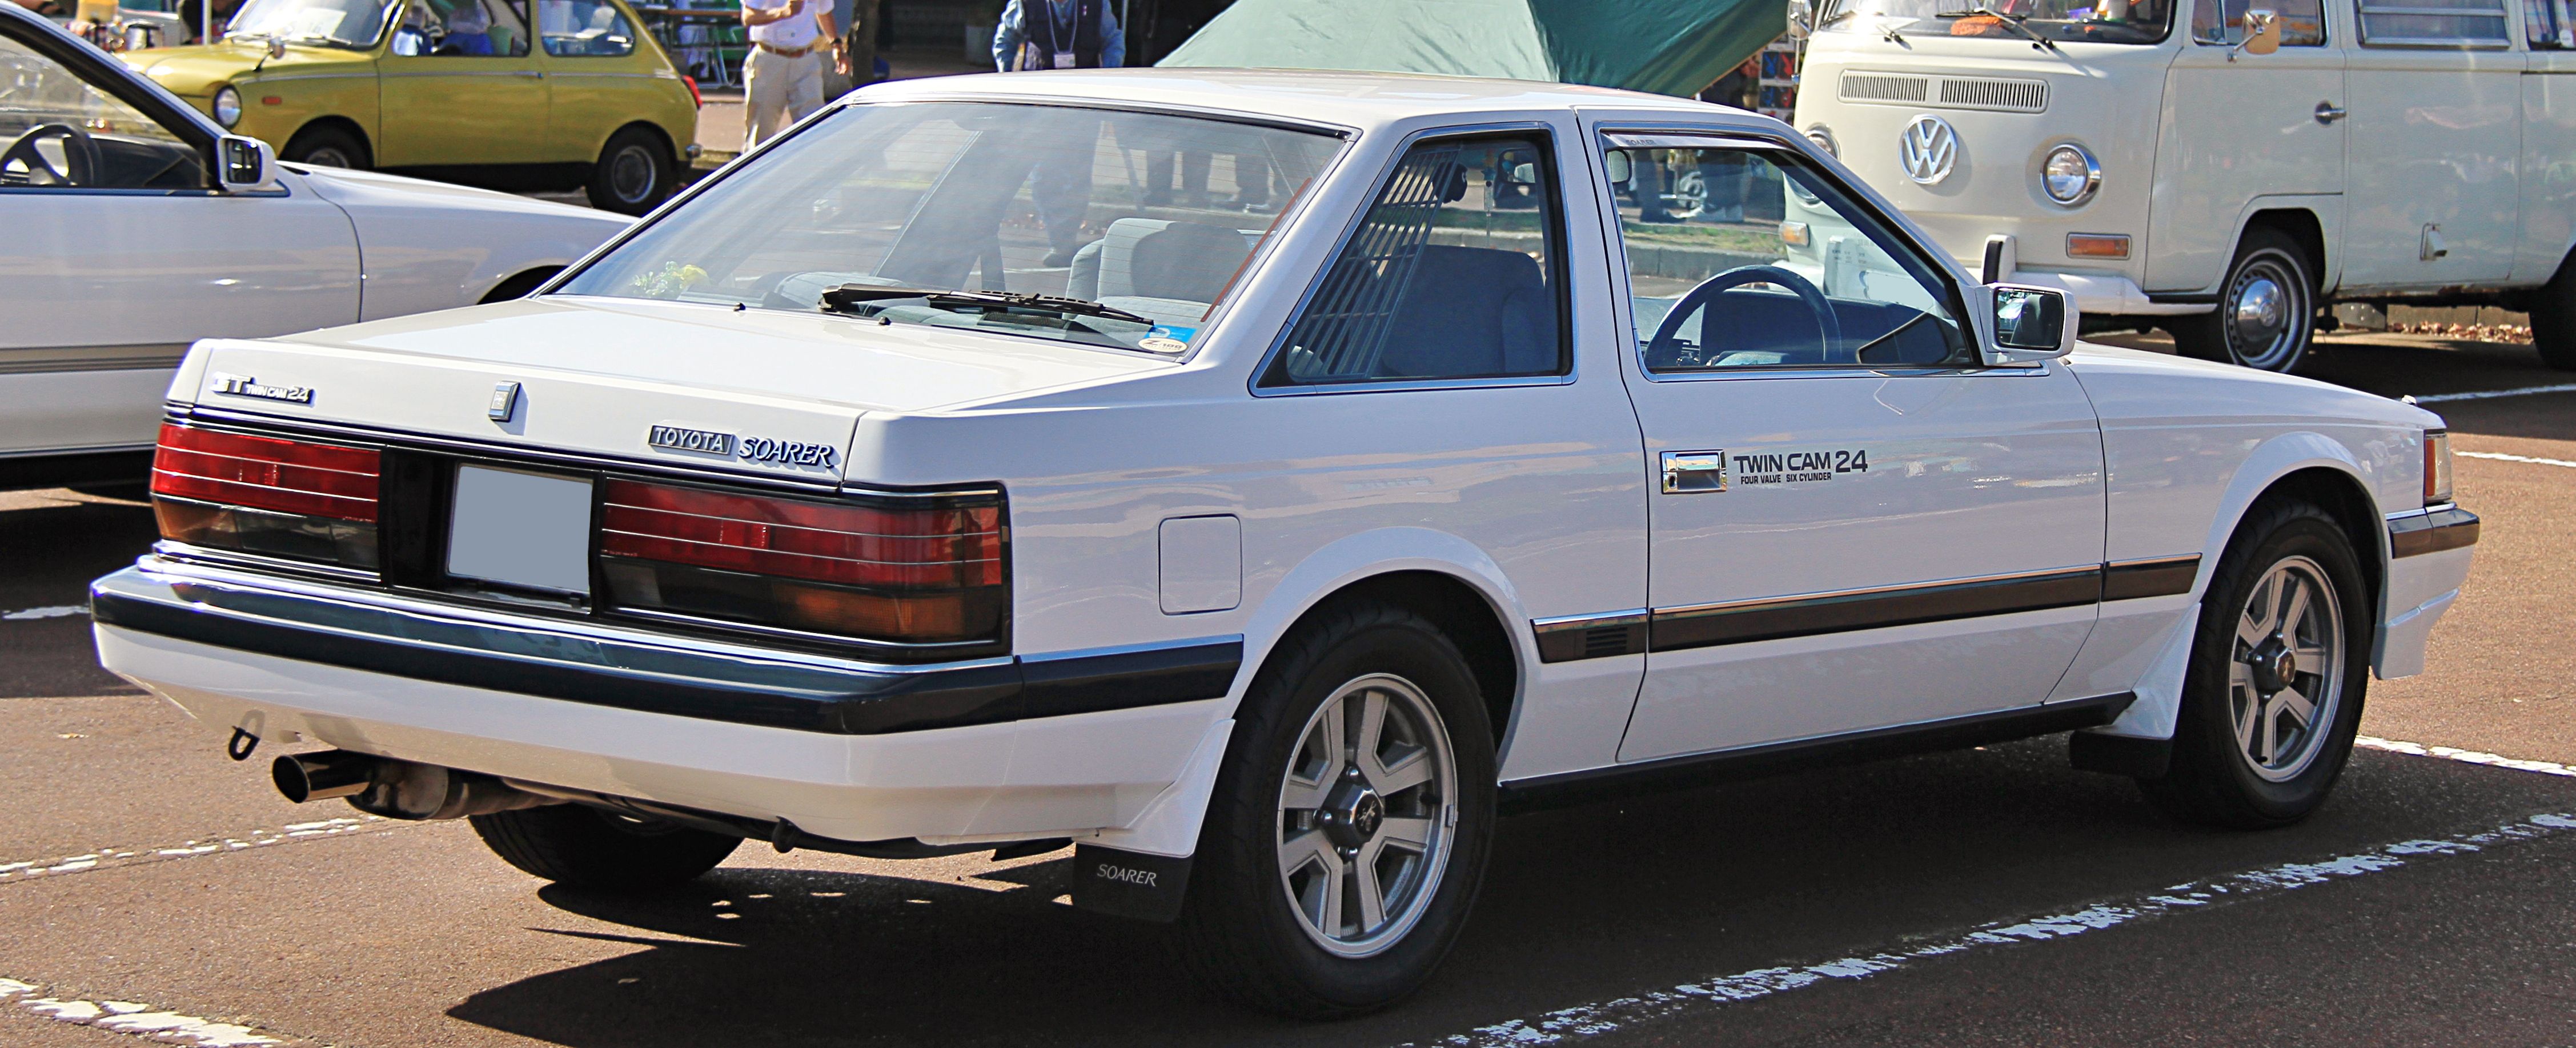 1984_Toyota_Soarer_2.0GT_rear